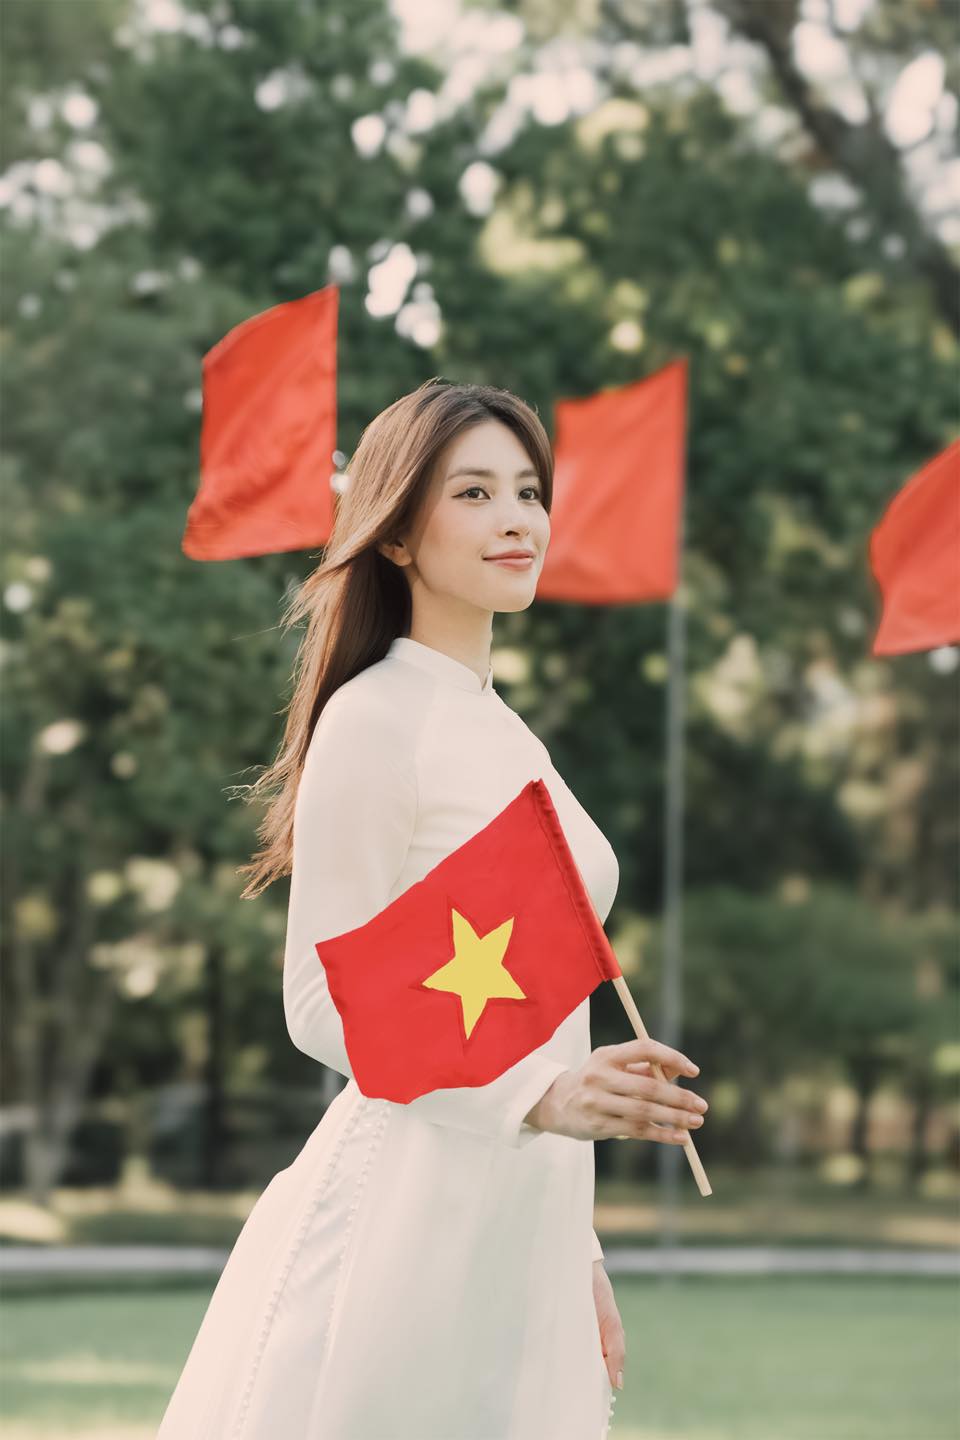 Hoa hậu Tiểu Vy, Bùi Quỳnh Hoa đồng loạt check-in địa điểm đặc biệt kỷ niệm 30/4- Ảnh 2.